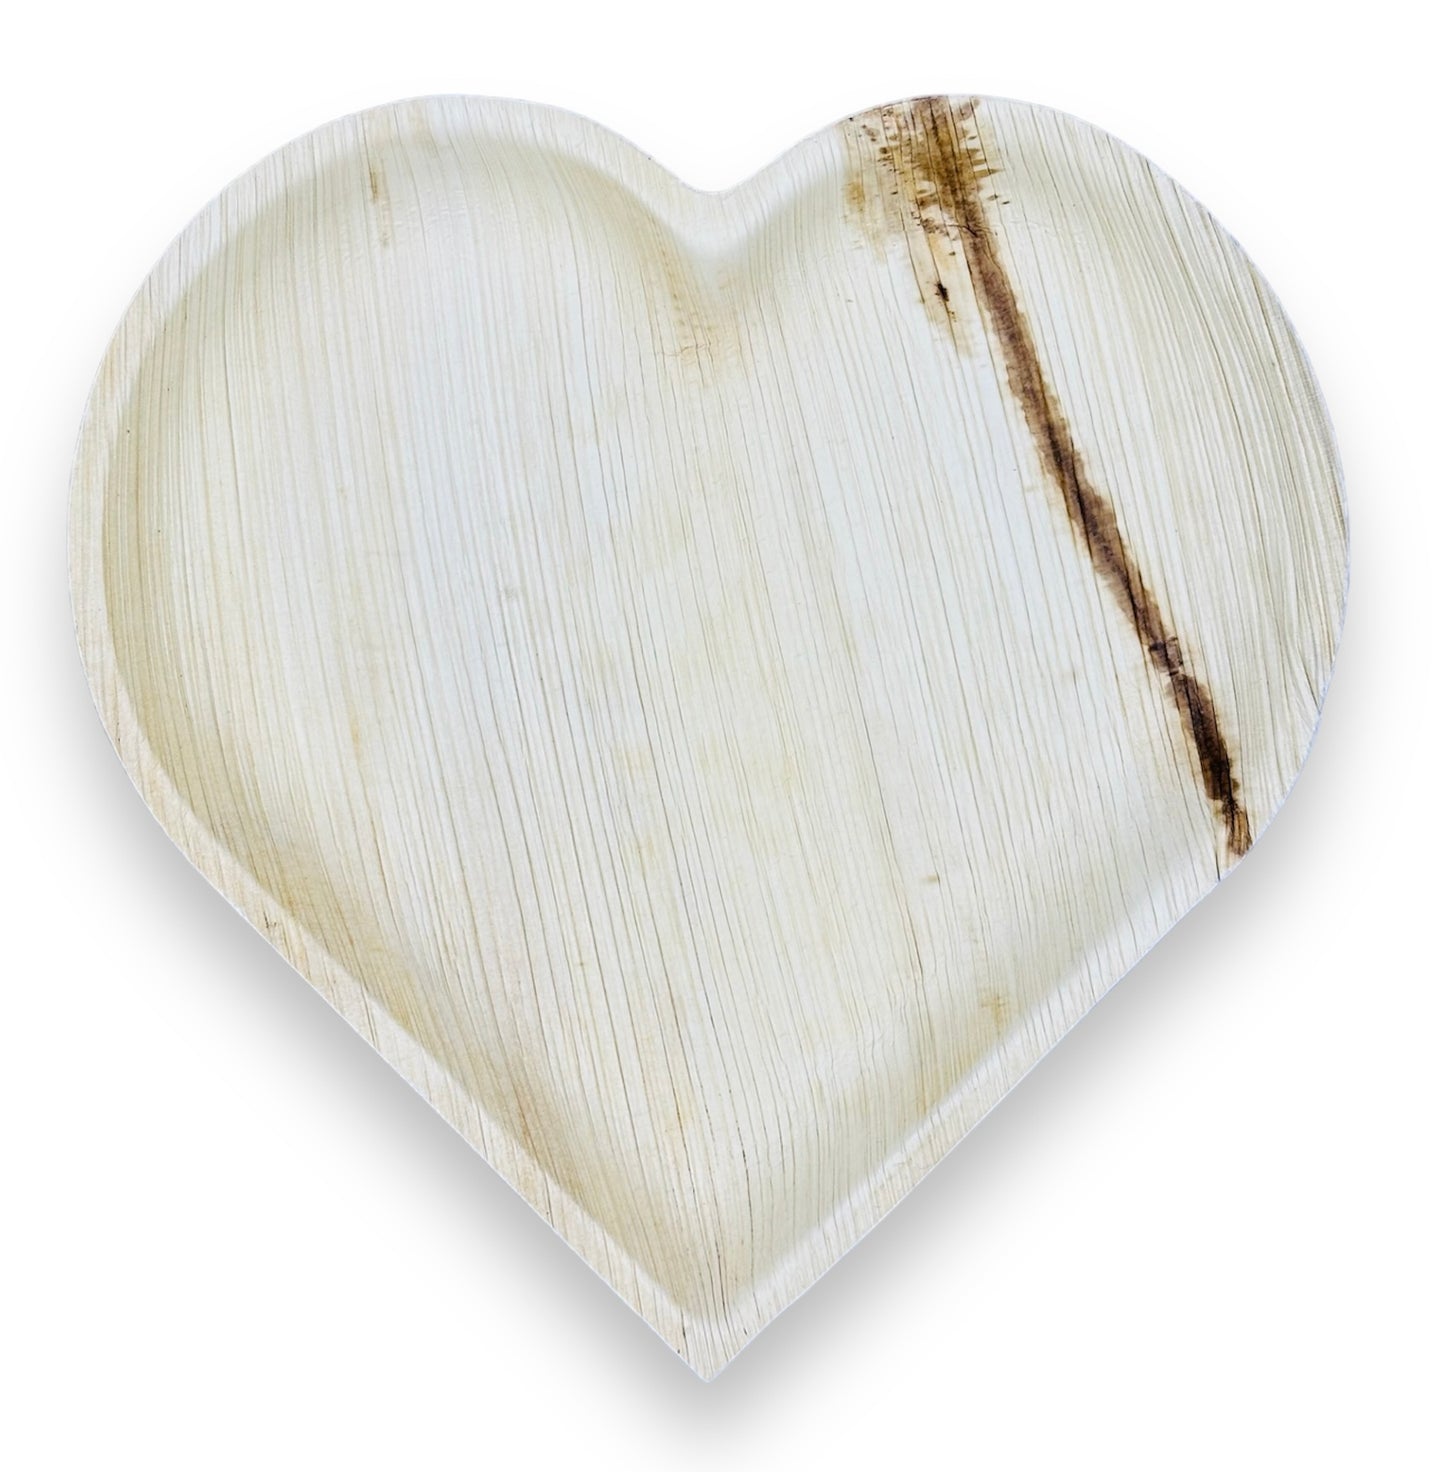 10" Heart Shaped Palm Leaf Plates